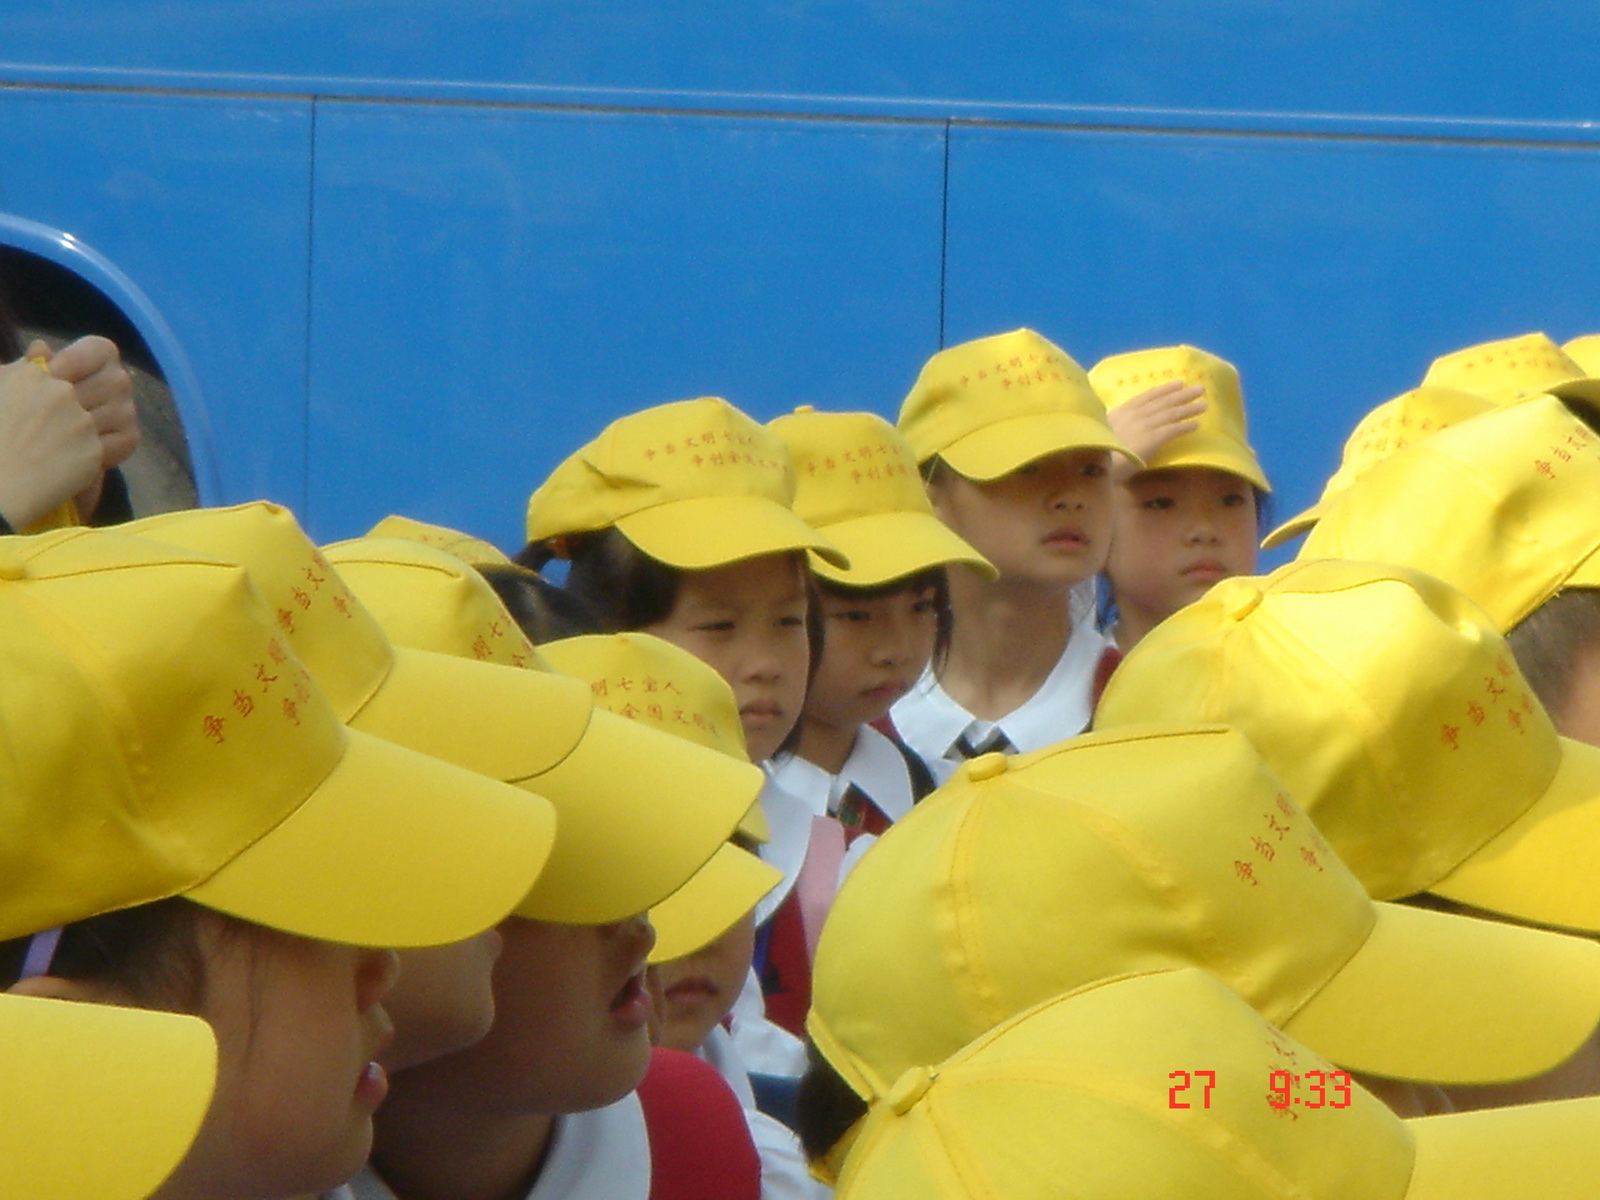 显眼的黄帽子.jpg